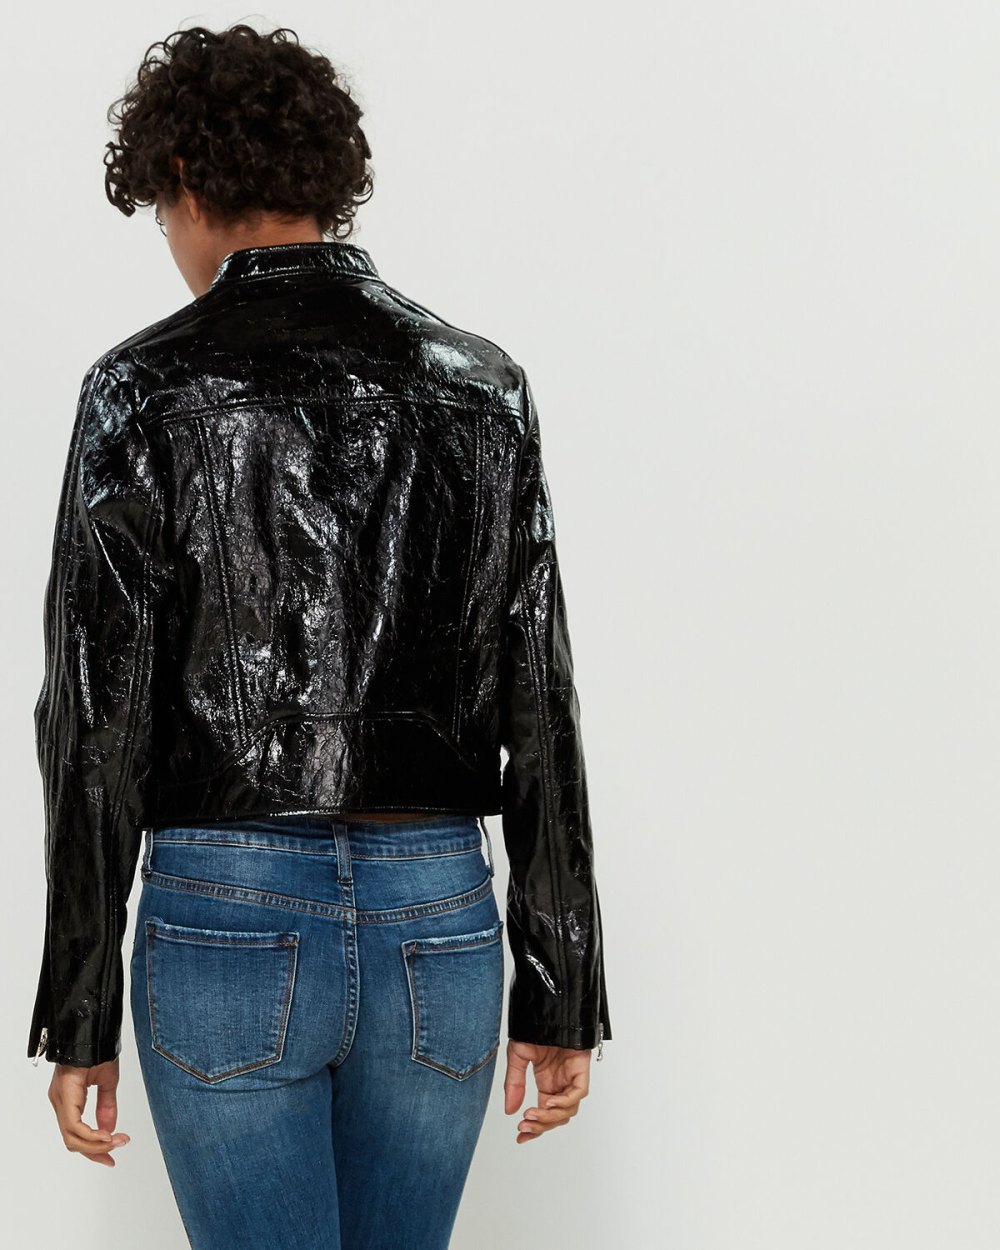 Rag & Bone Toni Leather Jacket back